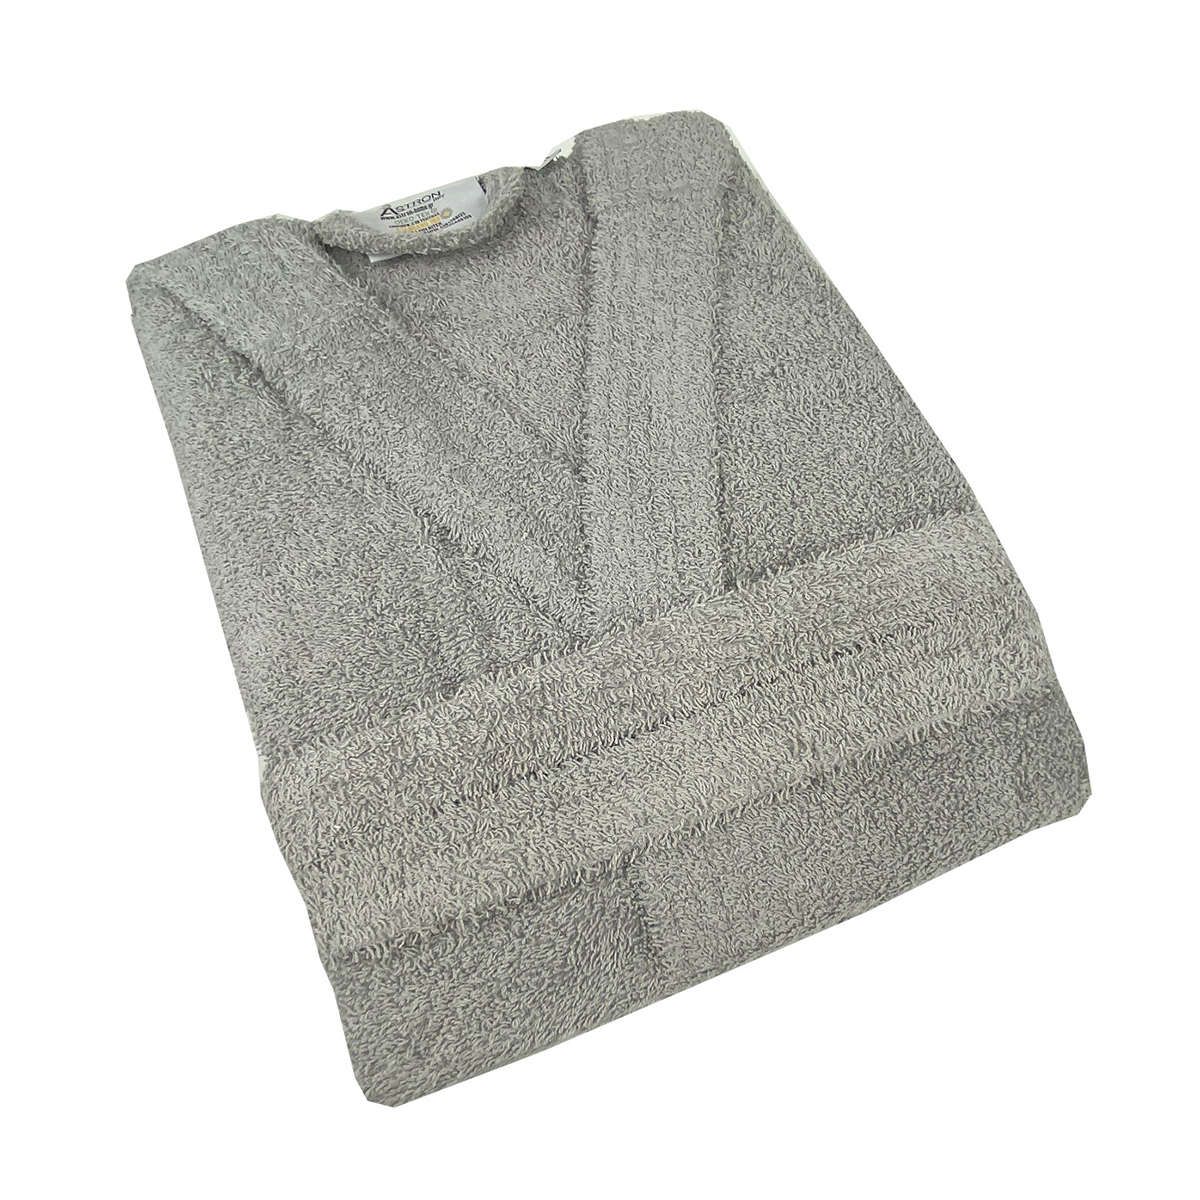 Μπουρνούζι με κουκούλα grey astron - X-Large